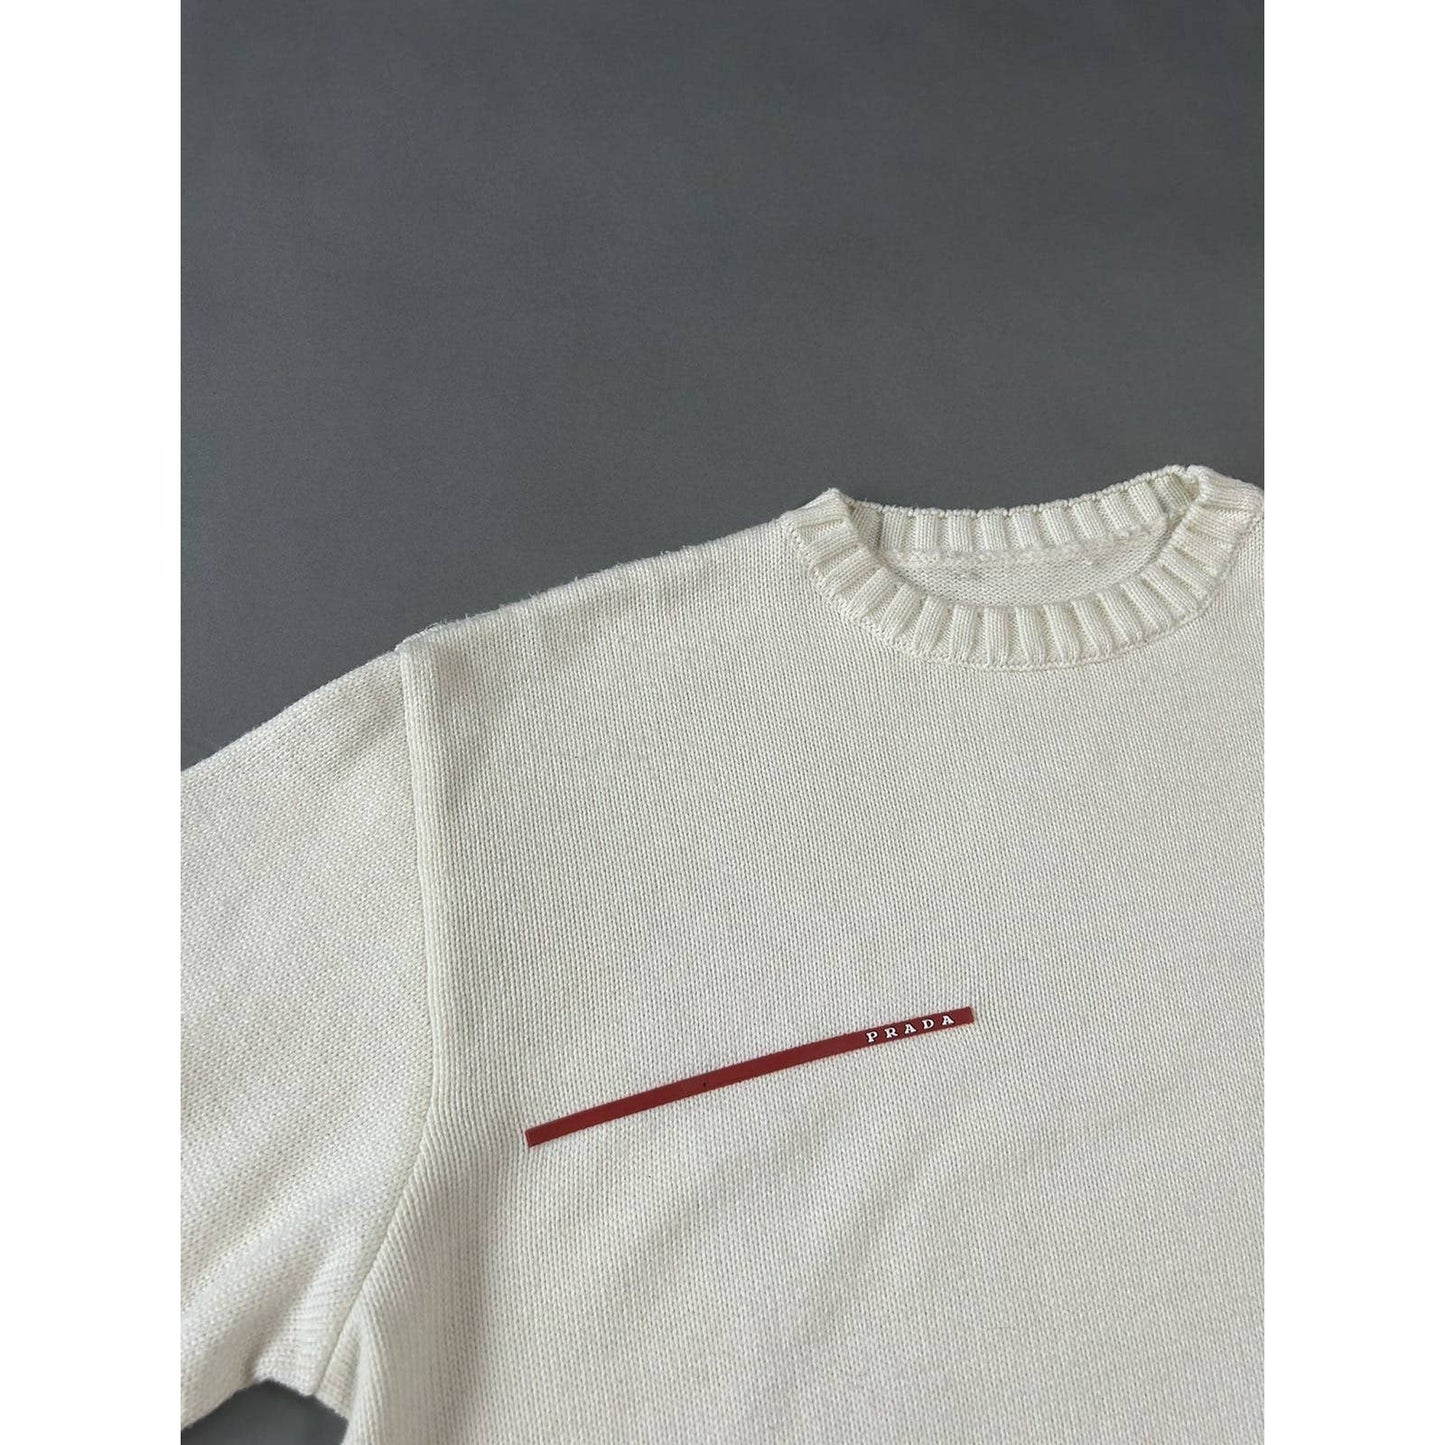 Prada sweater white big logo red tab vintage